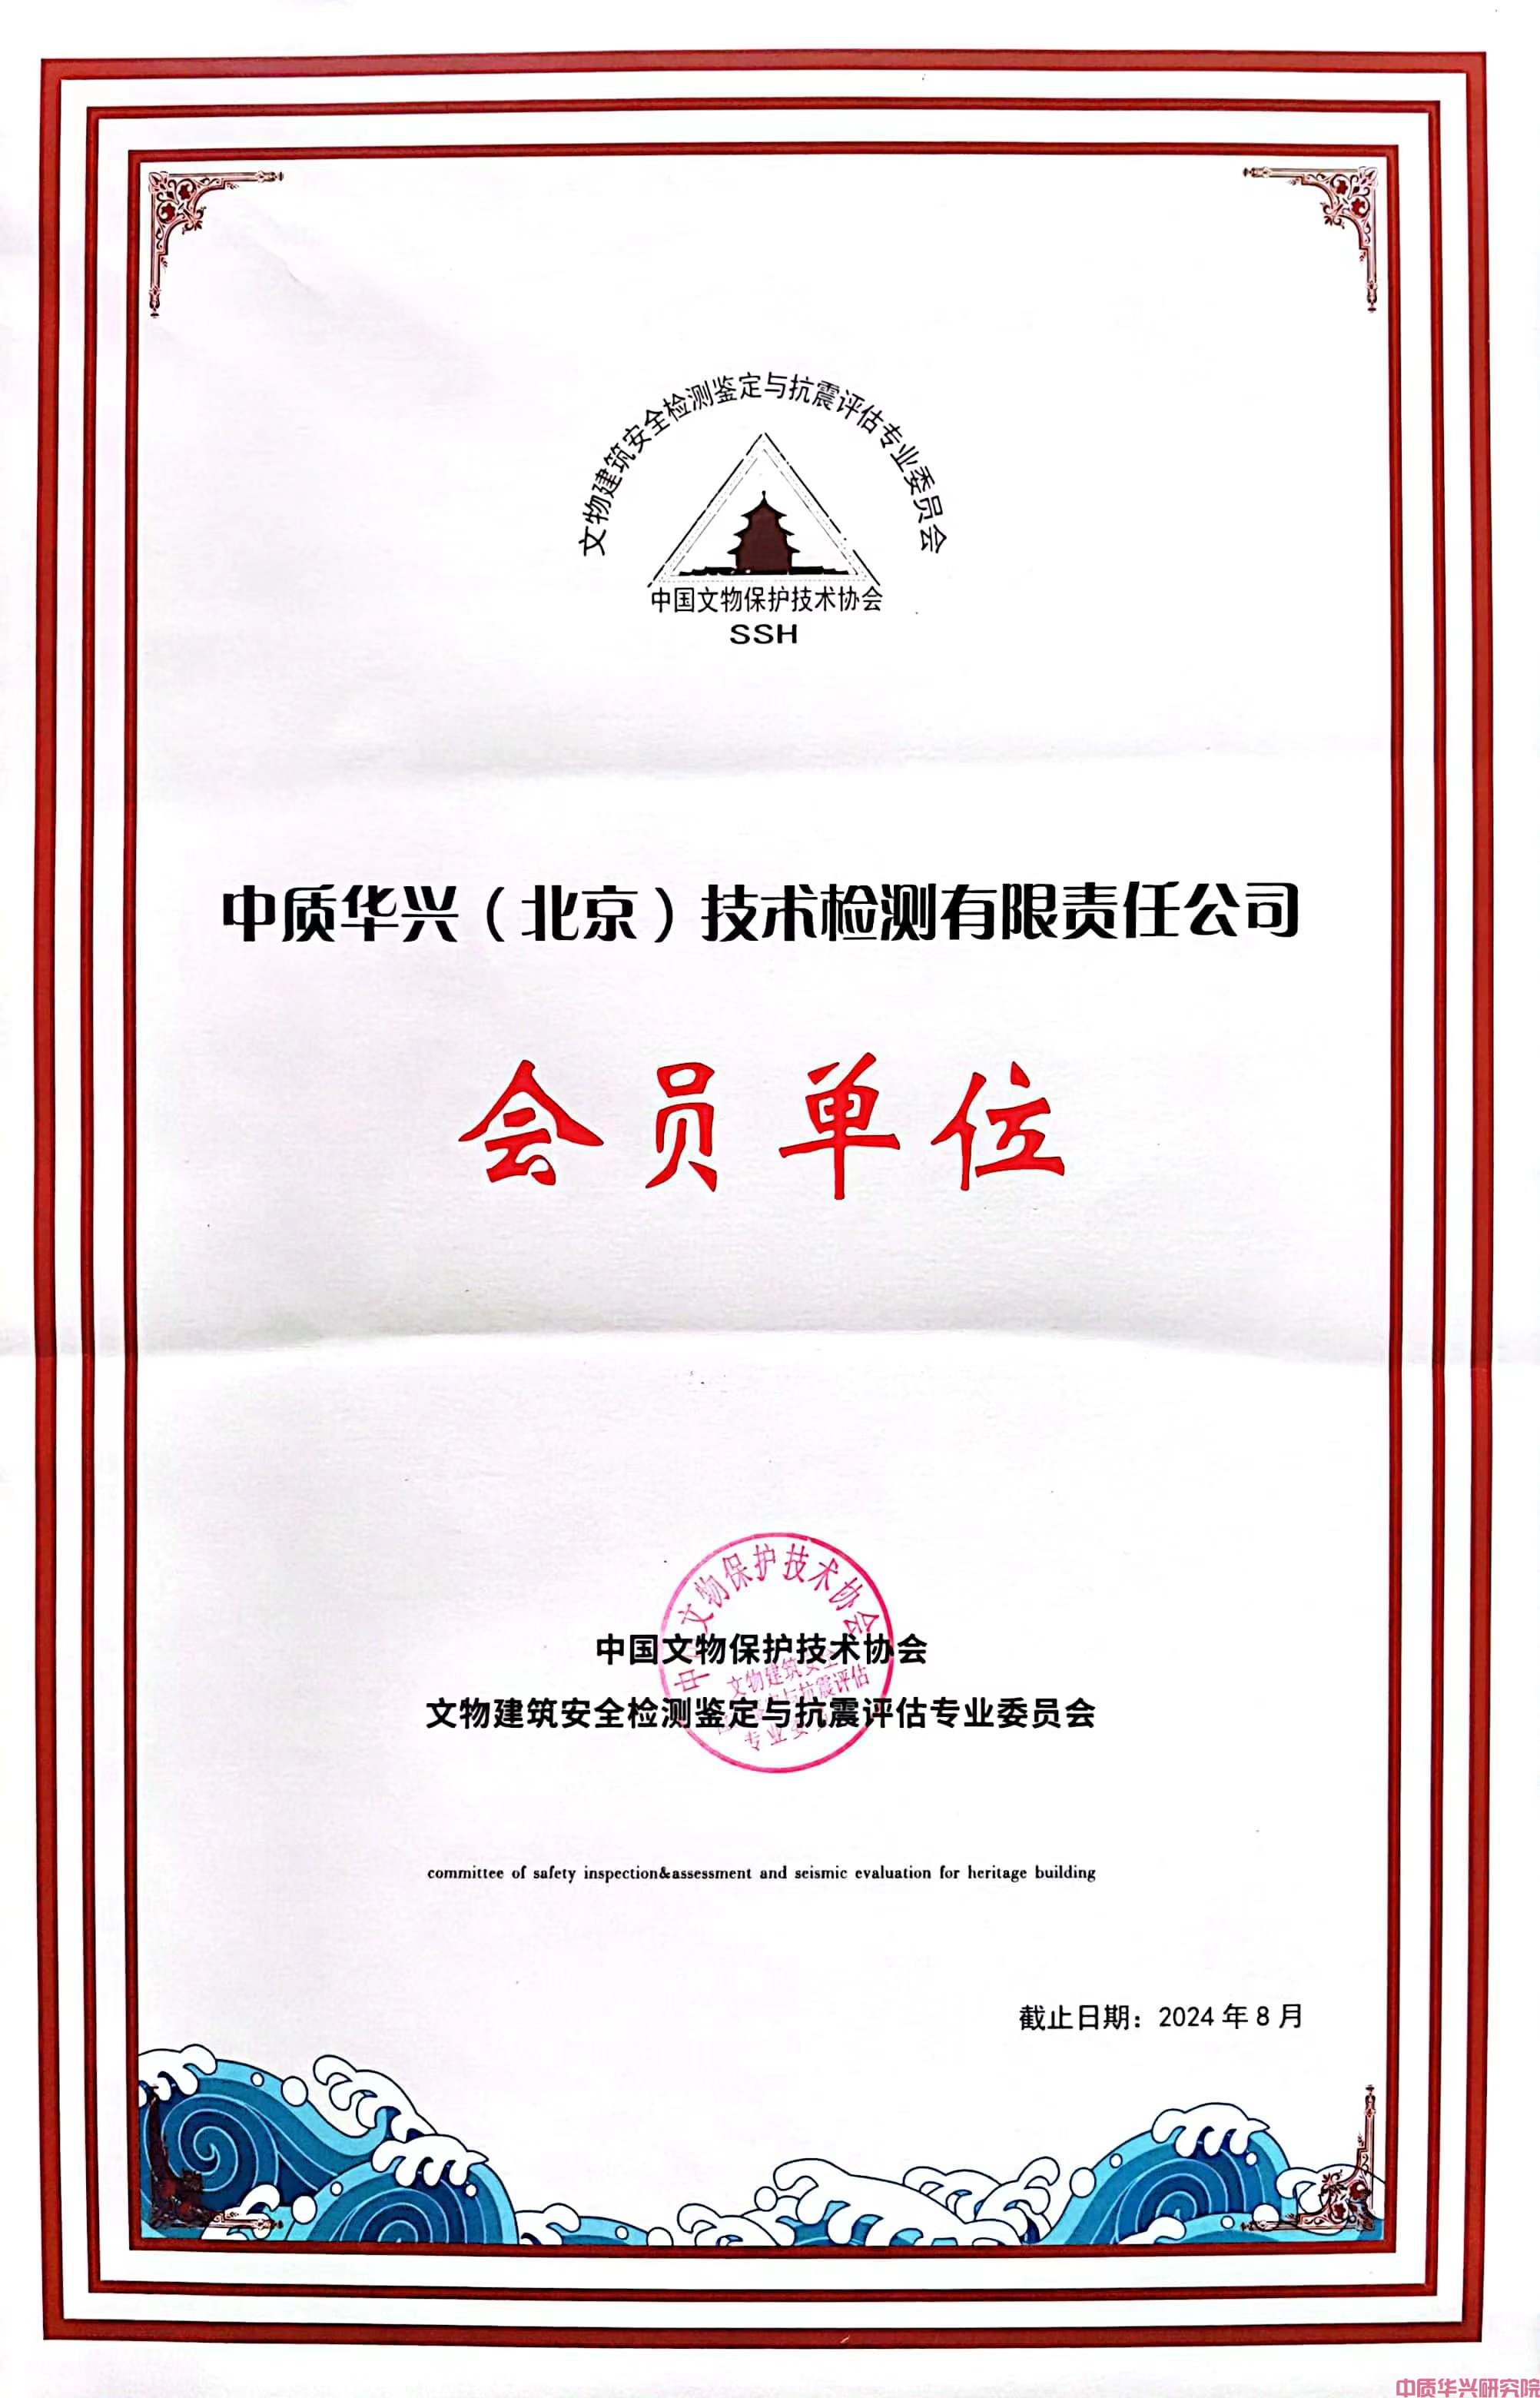 中质华兴检测公司加入中国文物保护技术协会